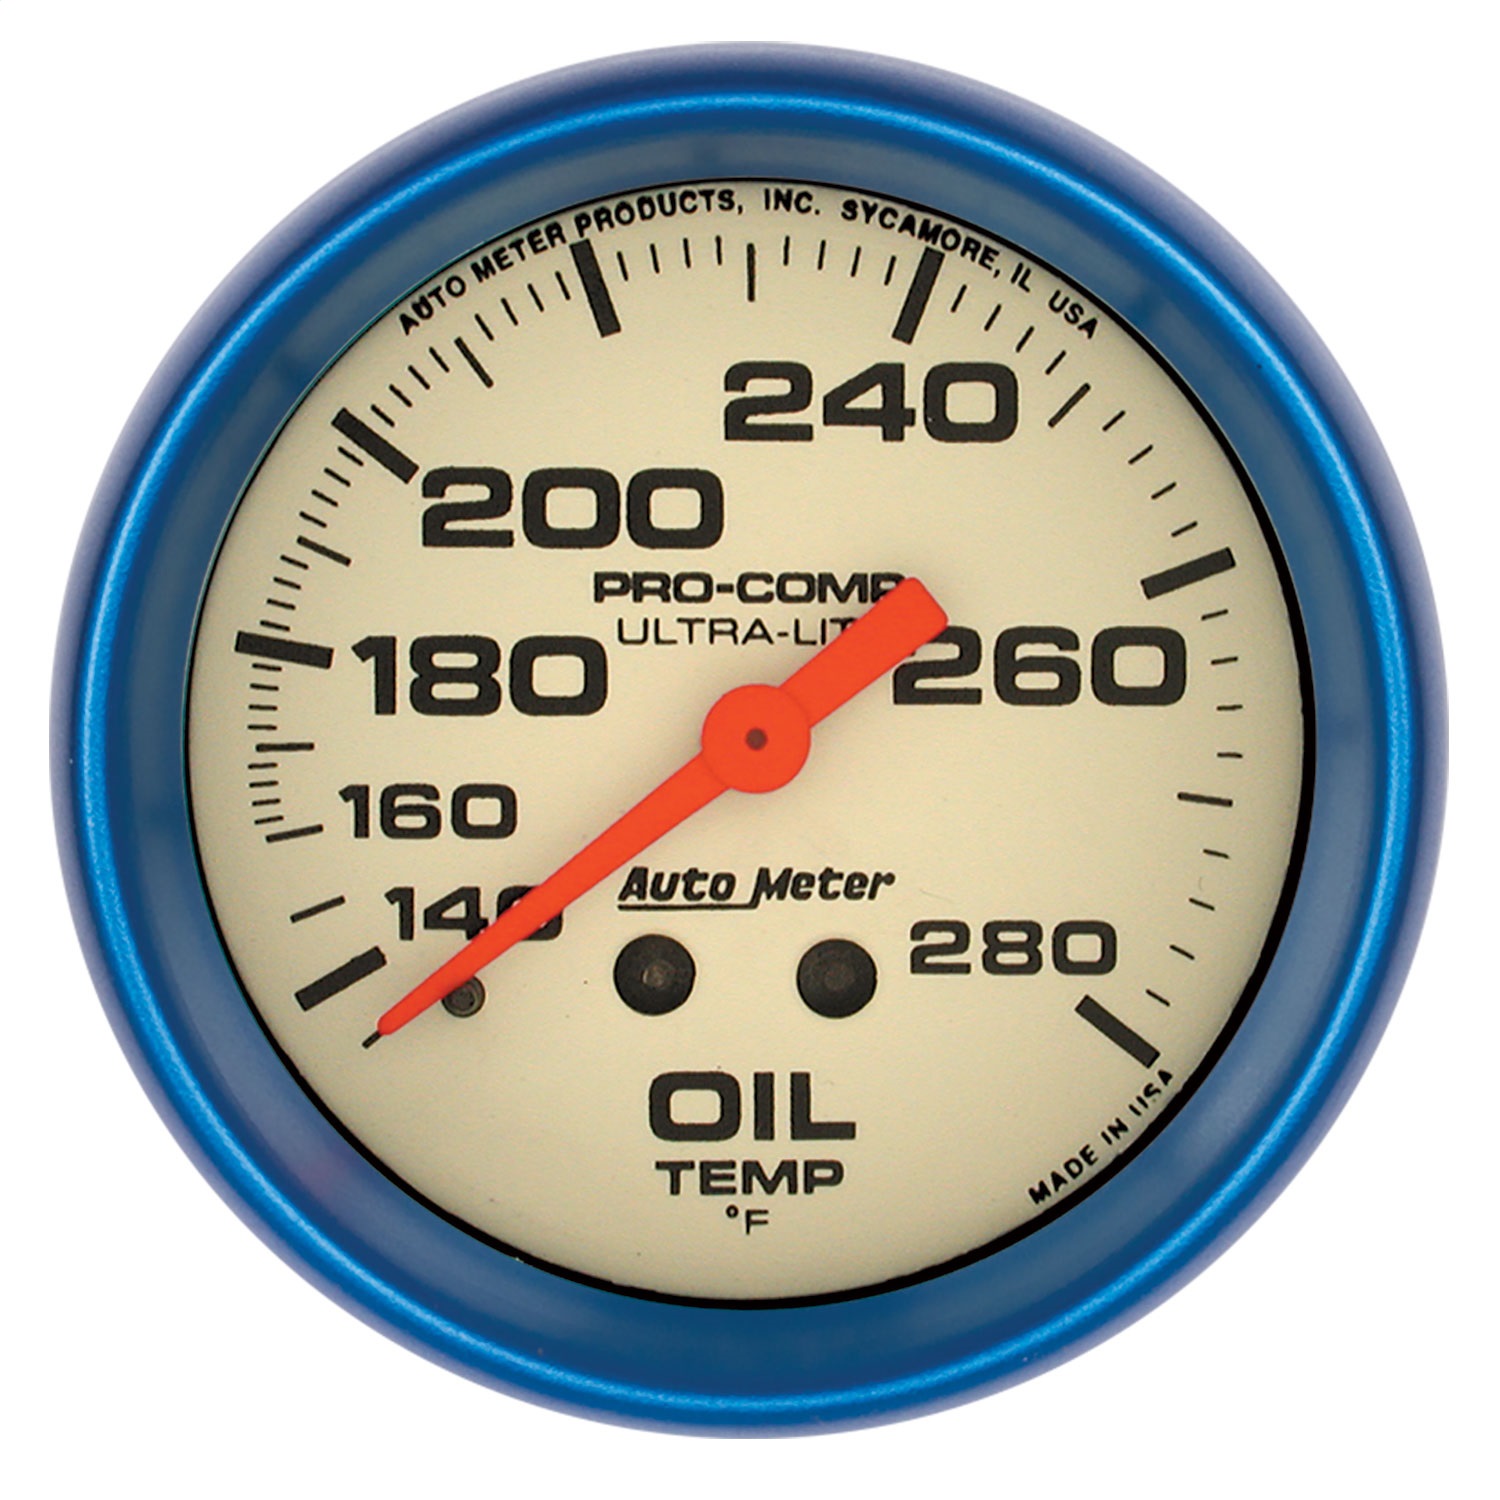 Auto Meter Auto Meter 4241 Ultra-Nite; Oil Temperature Gauge